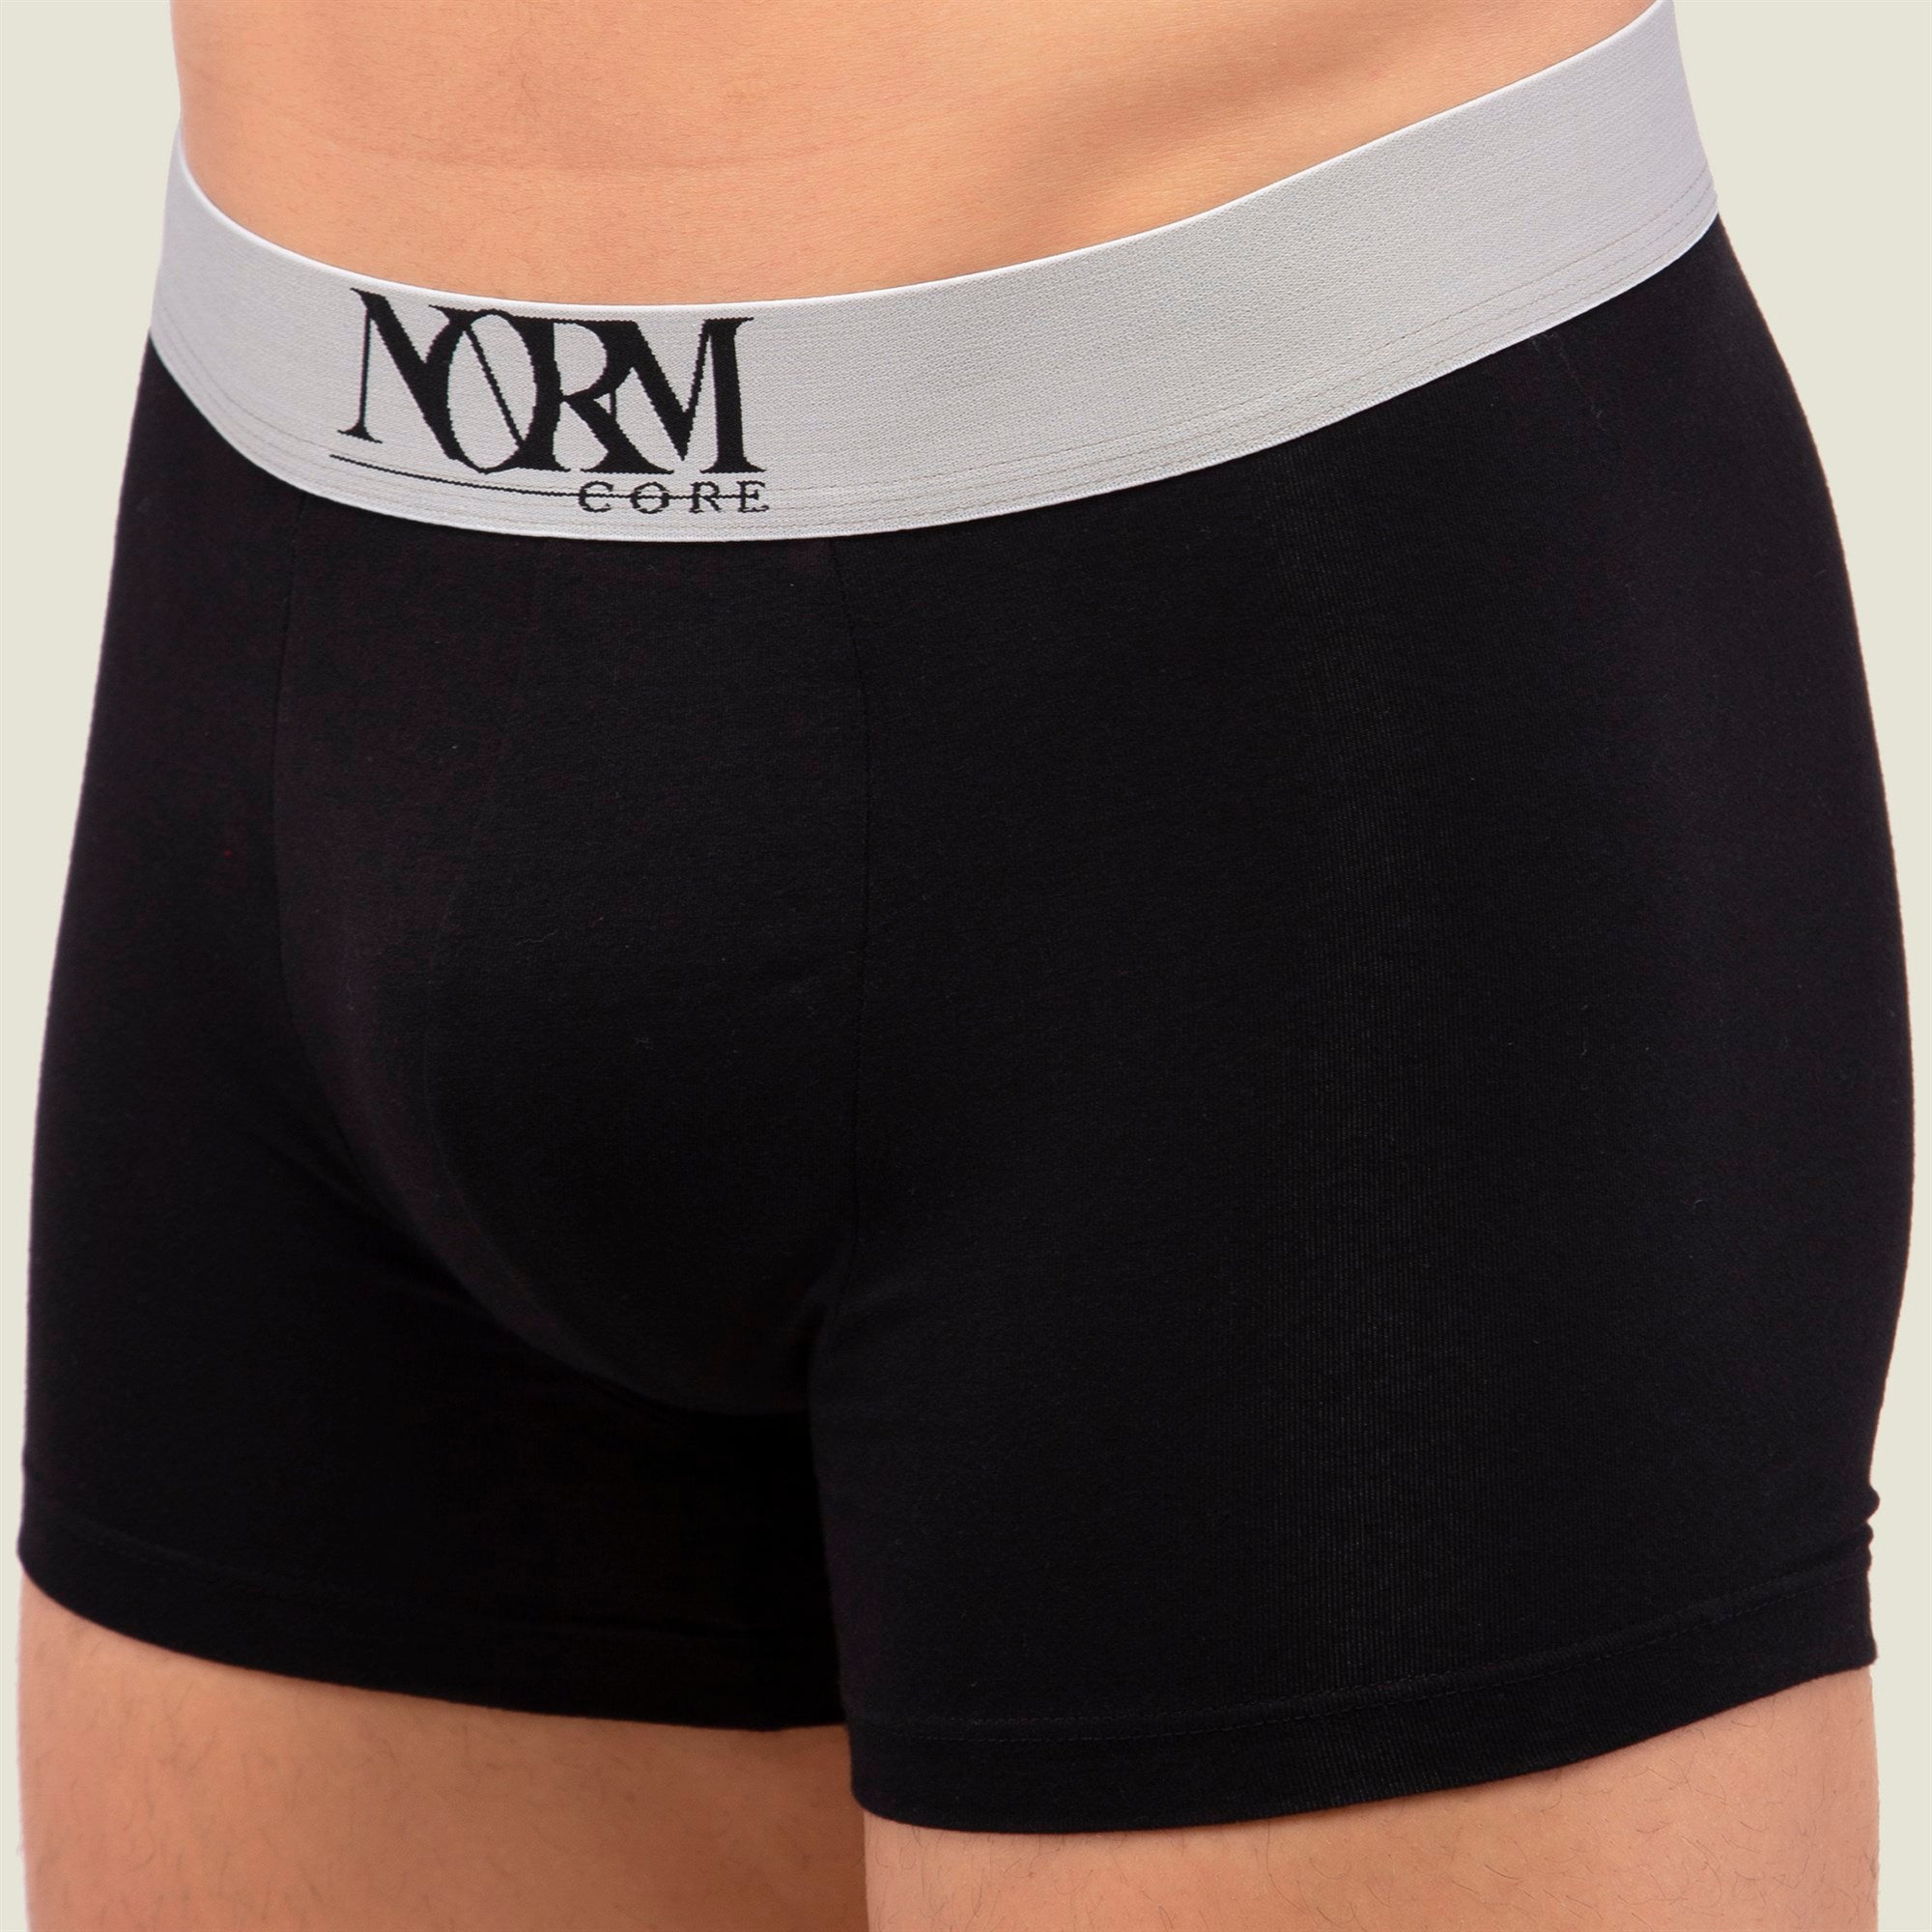 Normcore Cotton Innerwear - Black Trunk with Silver Waistband Underwear